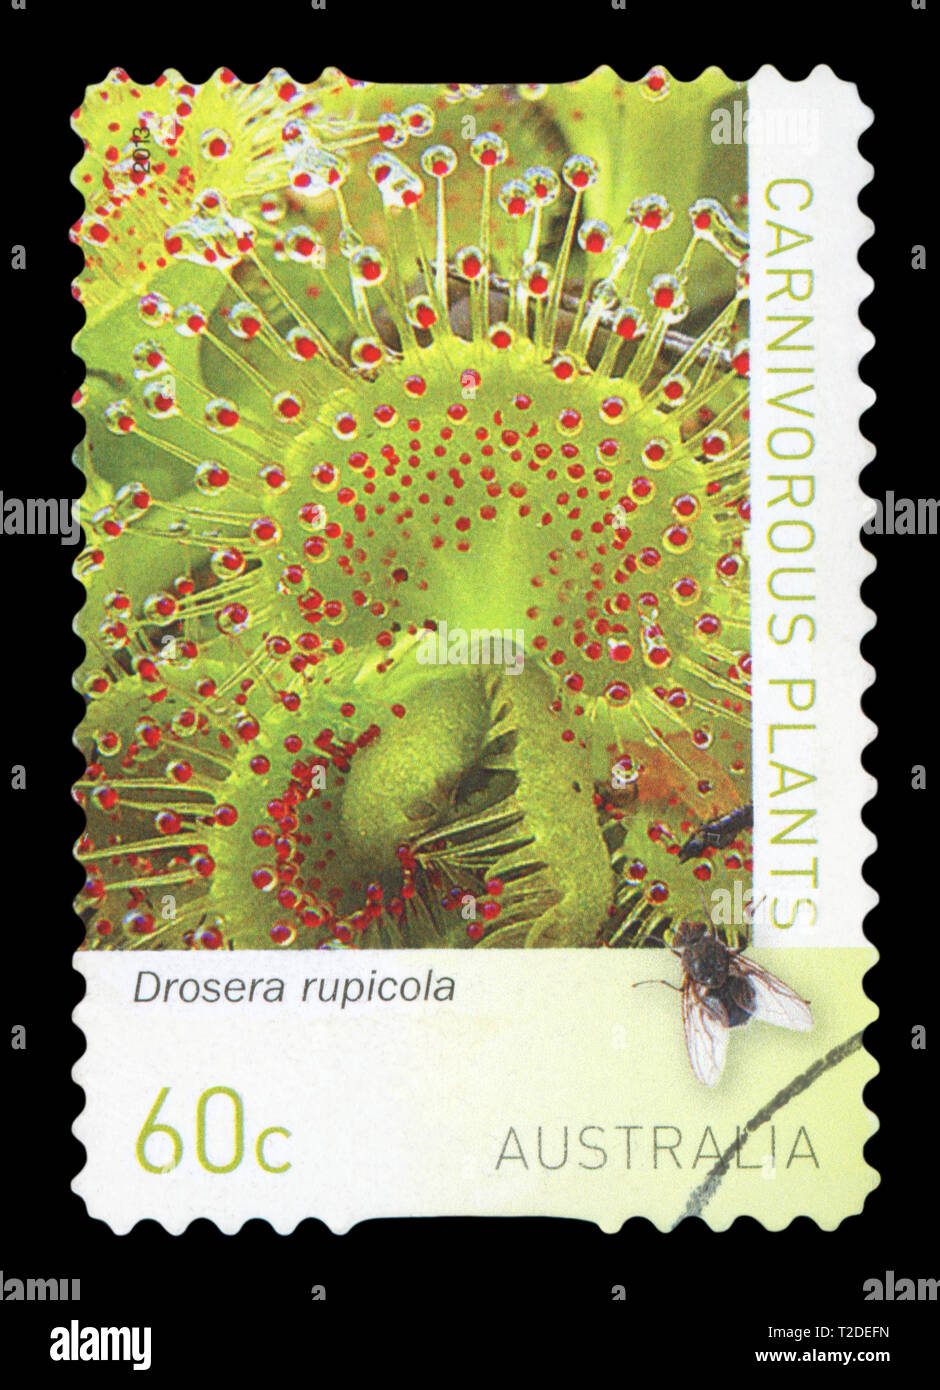 Australien - ca. 2013: einen gebrauchten Briefmarke aus Australien, zeigt Fleischfressende Pflanzen - Drosera rupicola, circa 2013. Stockfoto